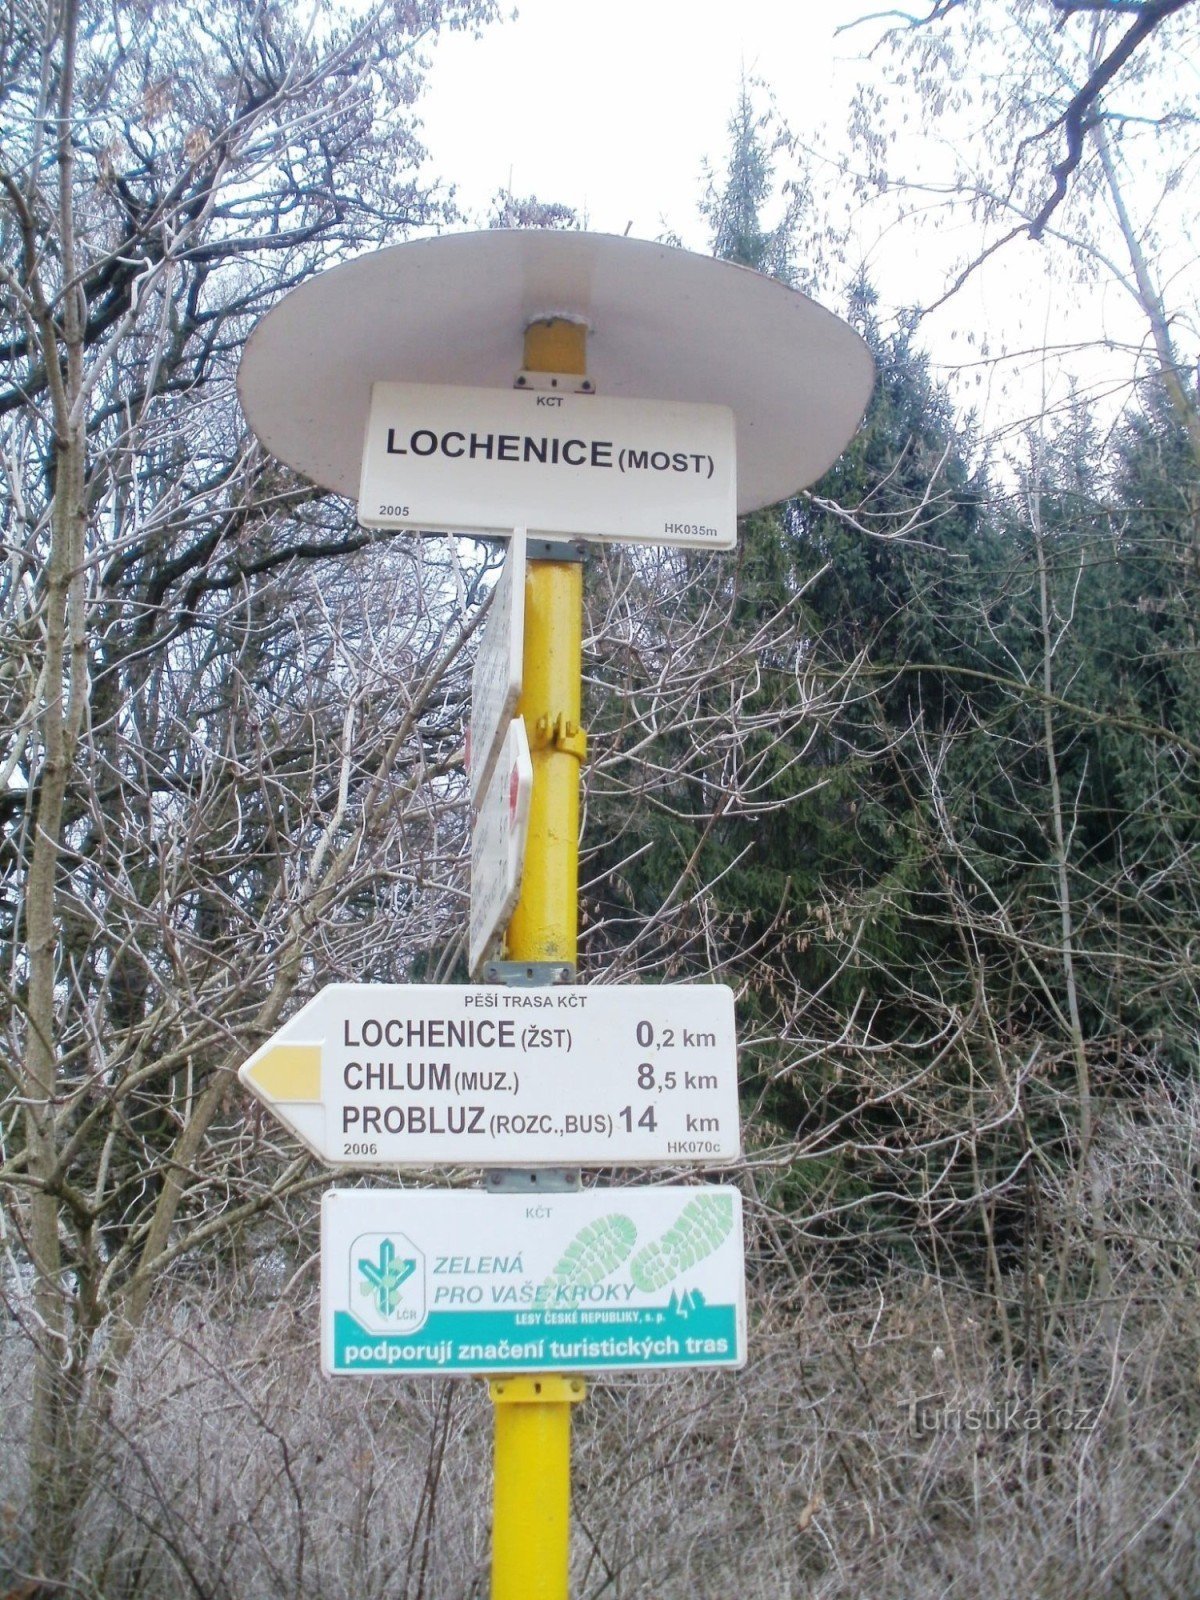 ngã tư du lịch Lochenice - cầu